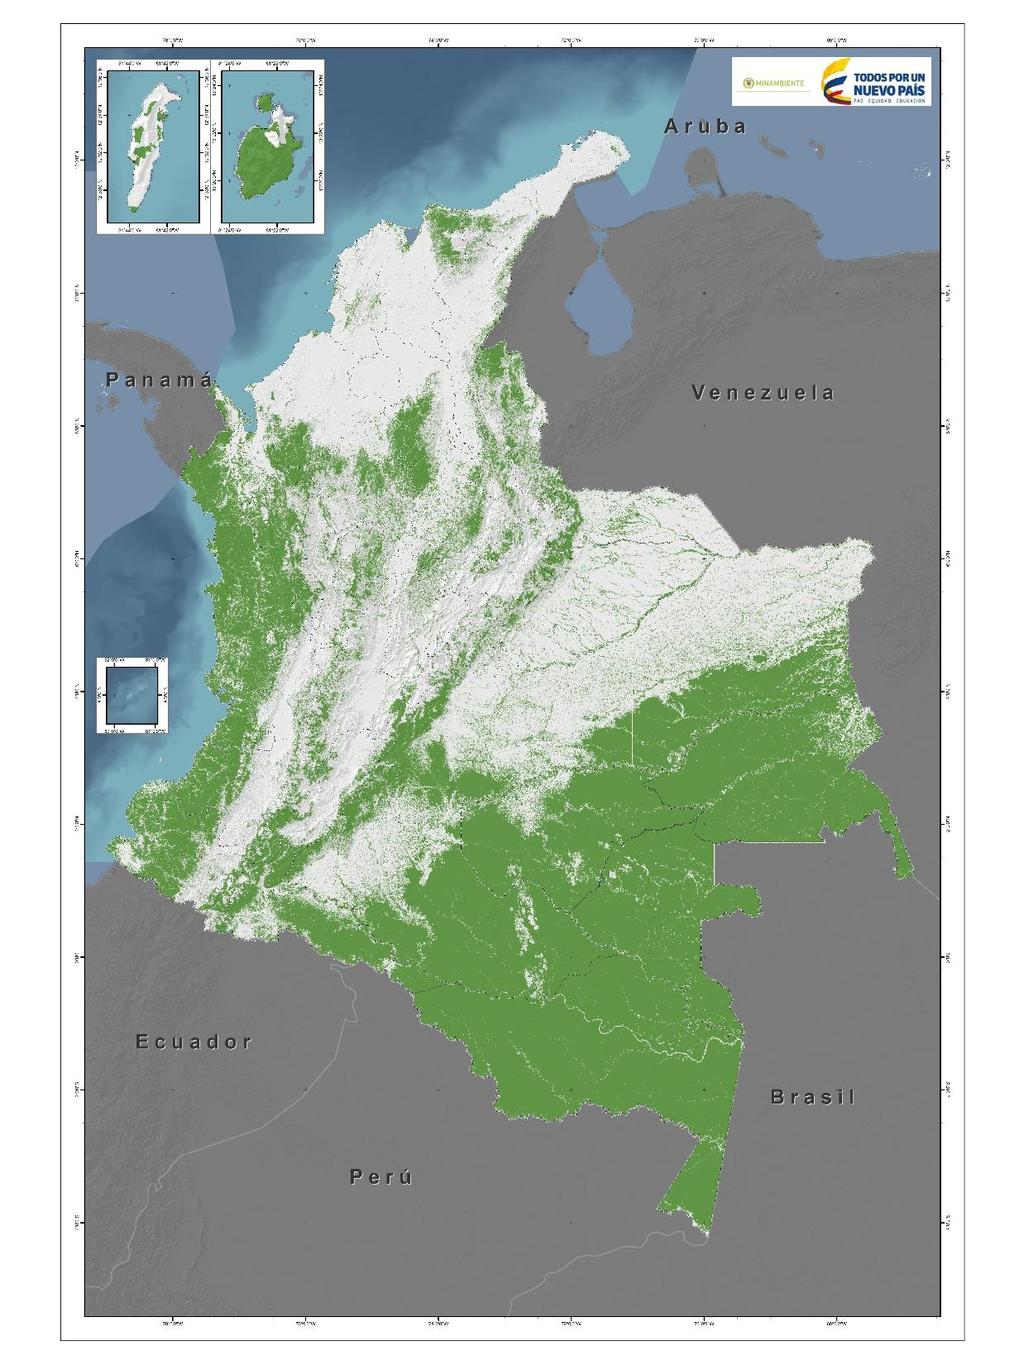 BOSQUES Y FIGURAS DE PROTECCIÓN Y/O MANEJO Tipo Bosques Naturales Territorio Continental (Terrestre) Área Cruce con continental bosques (ha.) (ha) - 59.558.064 59.474.